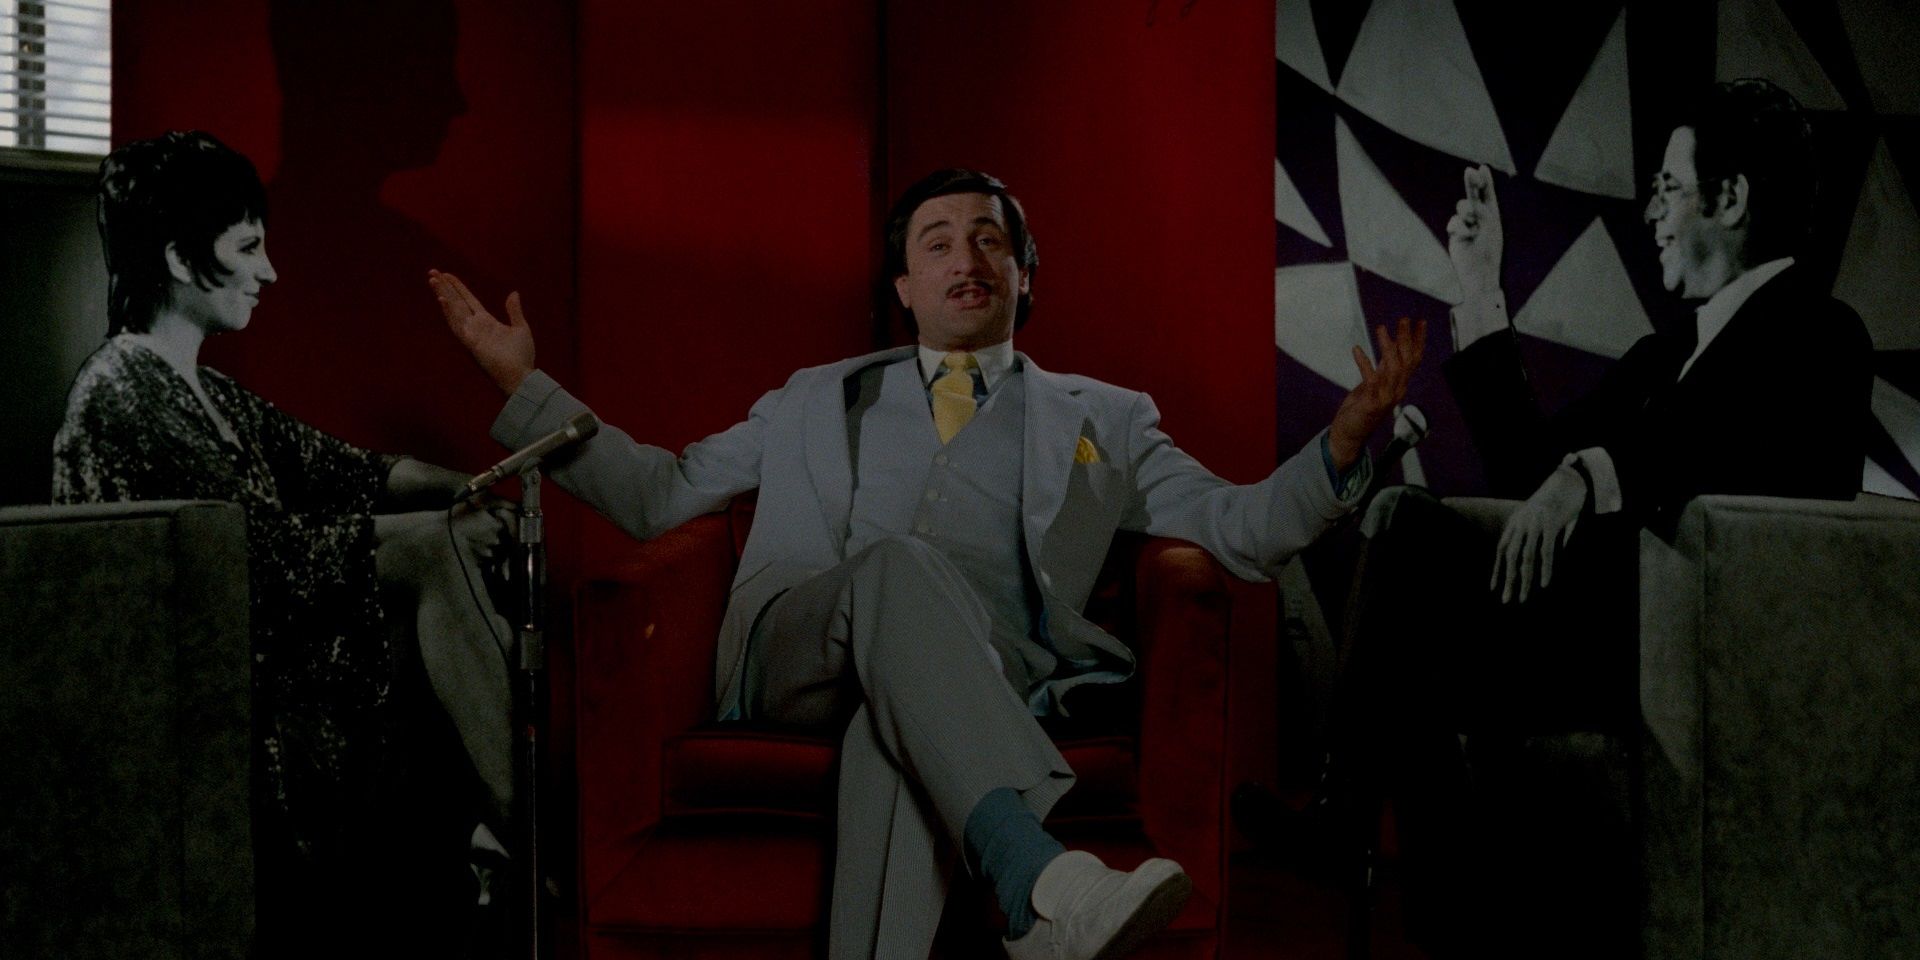 Robert De Niro in The King of Comedy